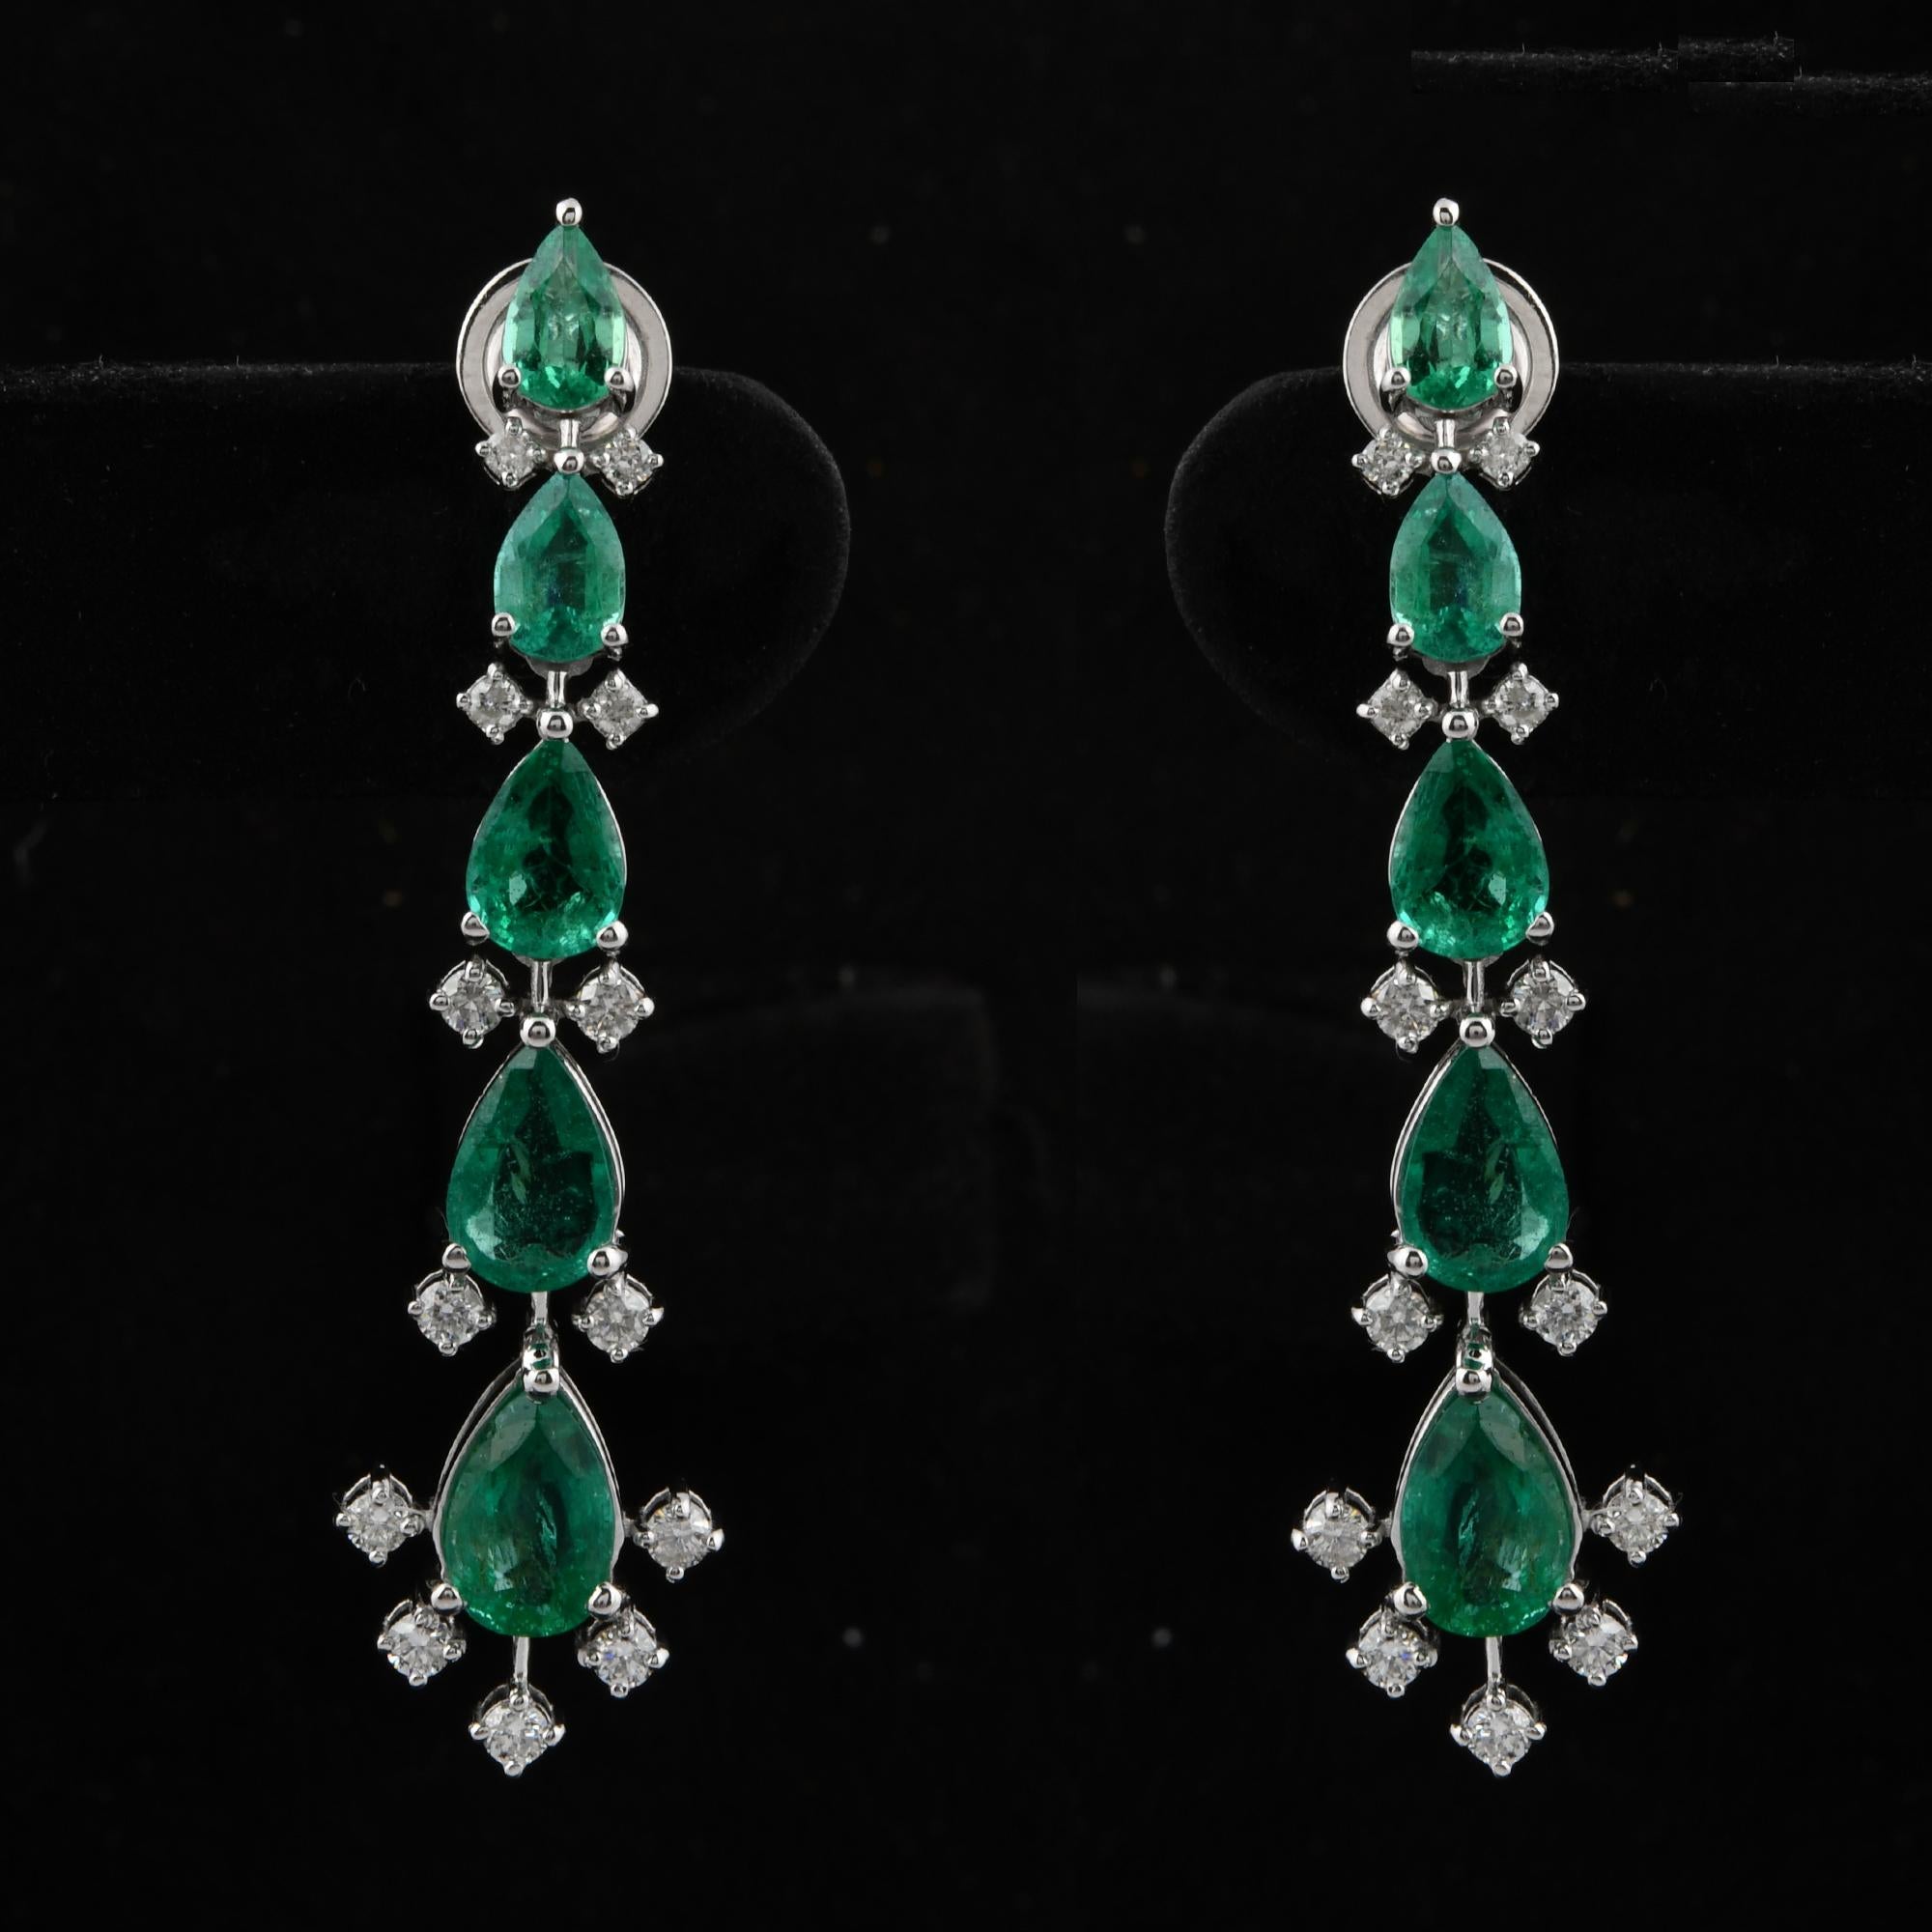 Pear Cut Zambian Emerald Gemstone Dangle Earrings Diamond 18 Karat White Gold Jewelry For Sale